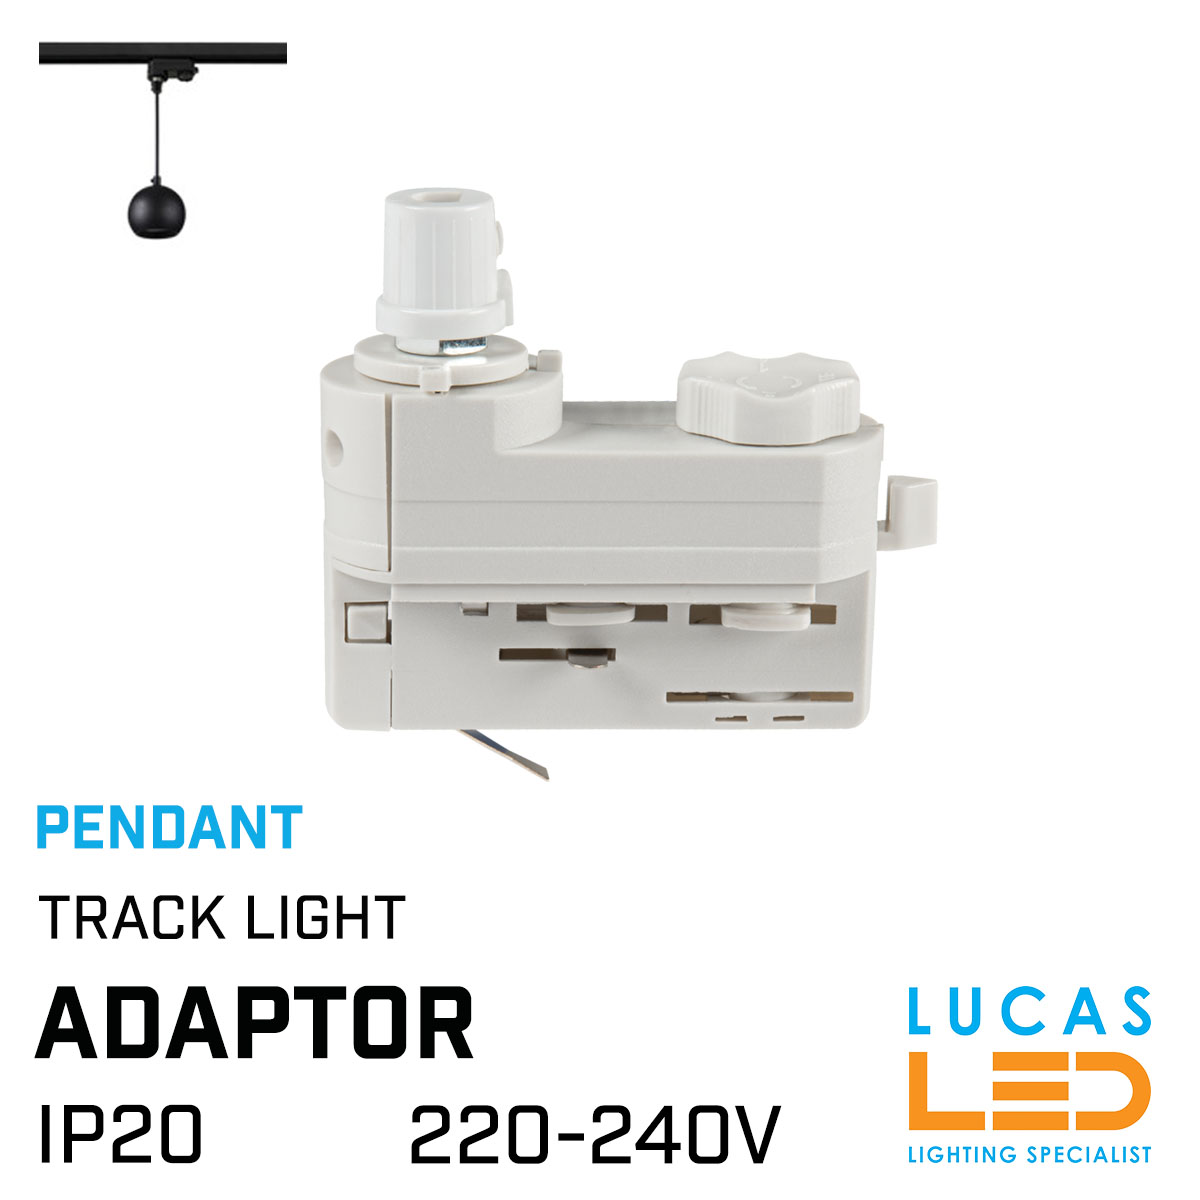 Pendant Track Light adaptor - White body